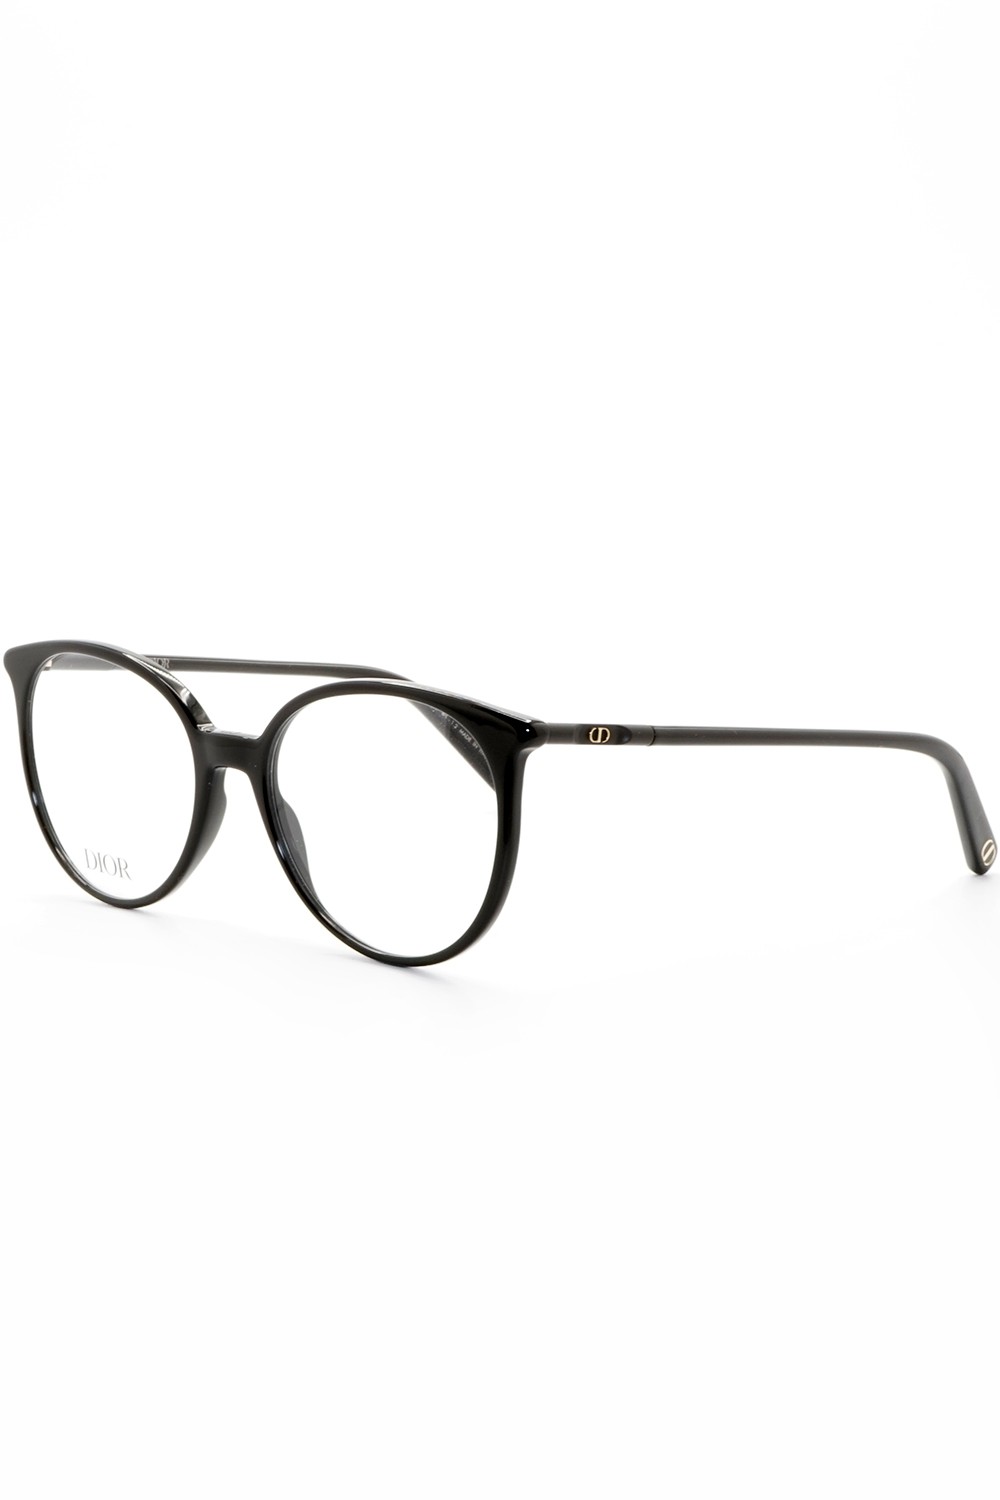 Christian Dior - Occhiali da vista in celluloide tondi per donna nero - B1I 1100